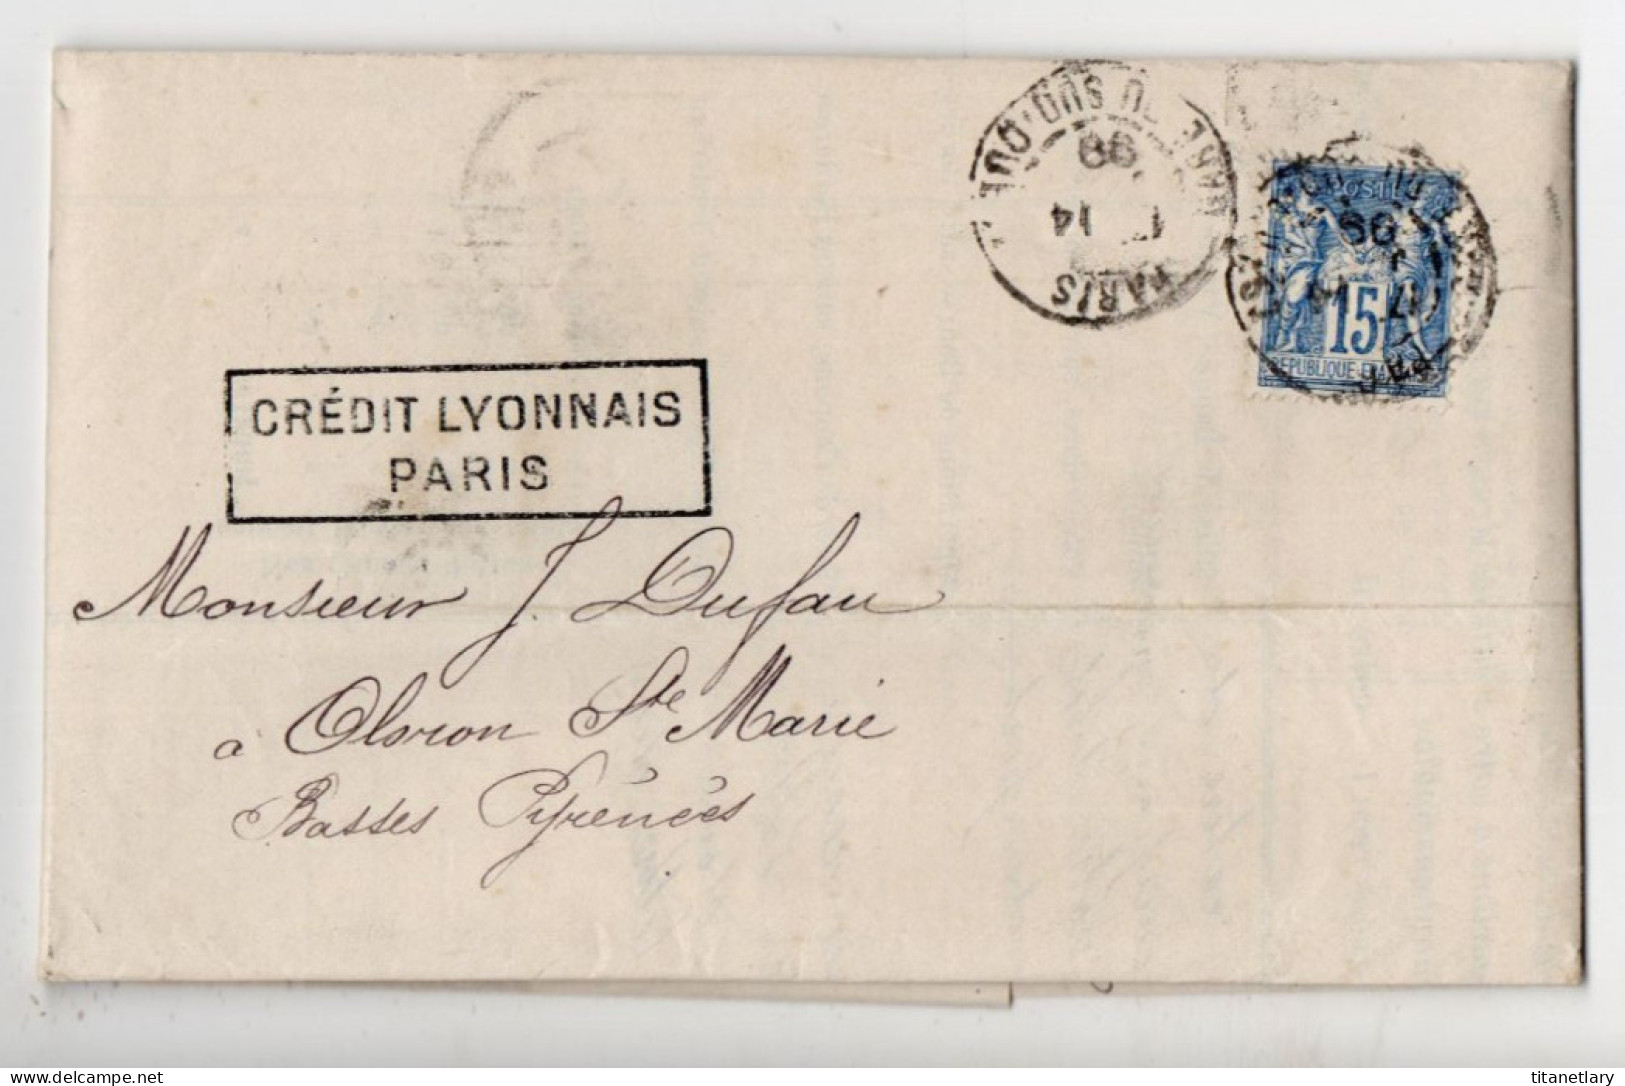 LAC Du Crédit Lyonnais Avec Sage Y&T N° 101 Perforé C L + Timbre Fiscal Perforé C L - Paris Pour Oloron Par Pau En 1899 - 1898-1900 Sage (Tipo III)